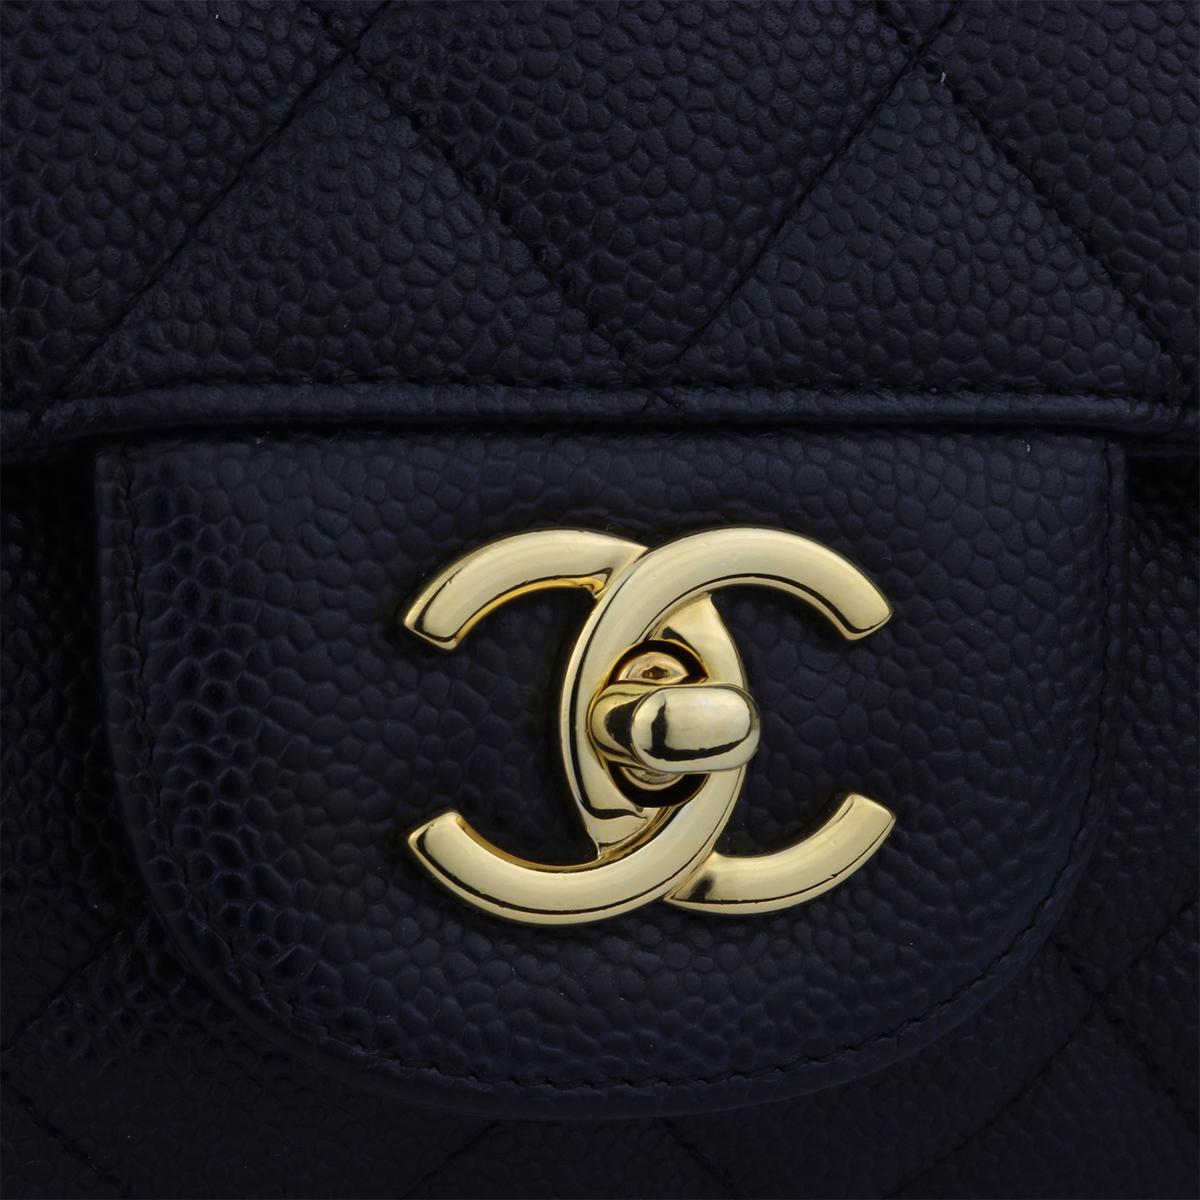 maxi caviar flap bag black and gold hardware